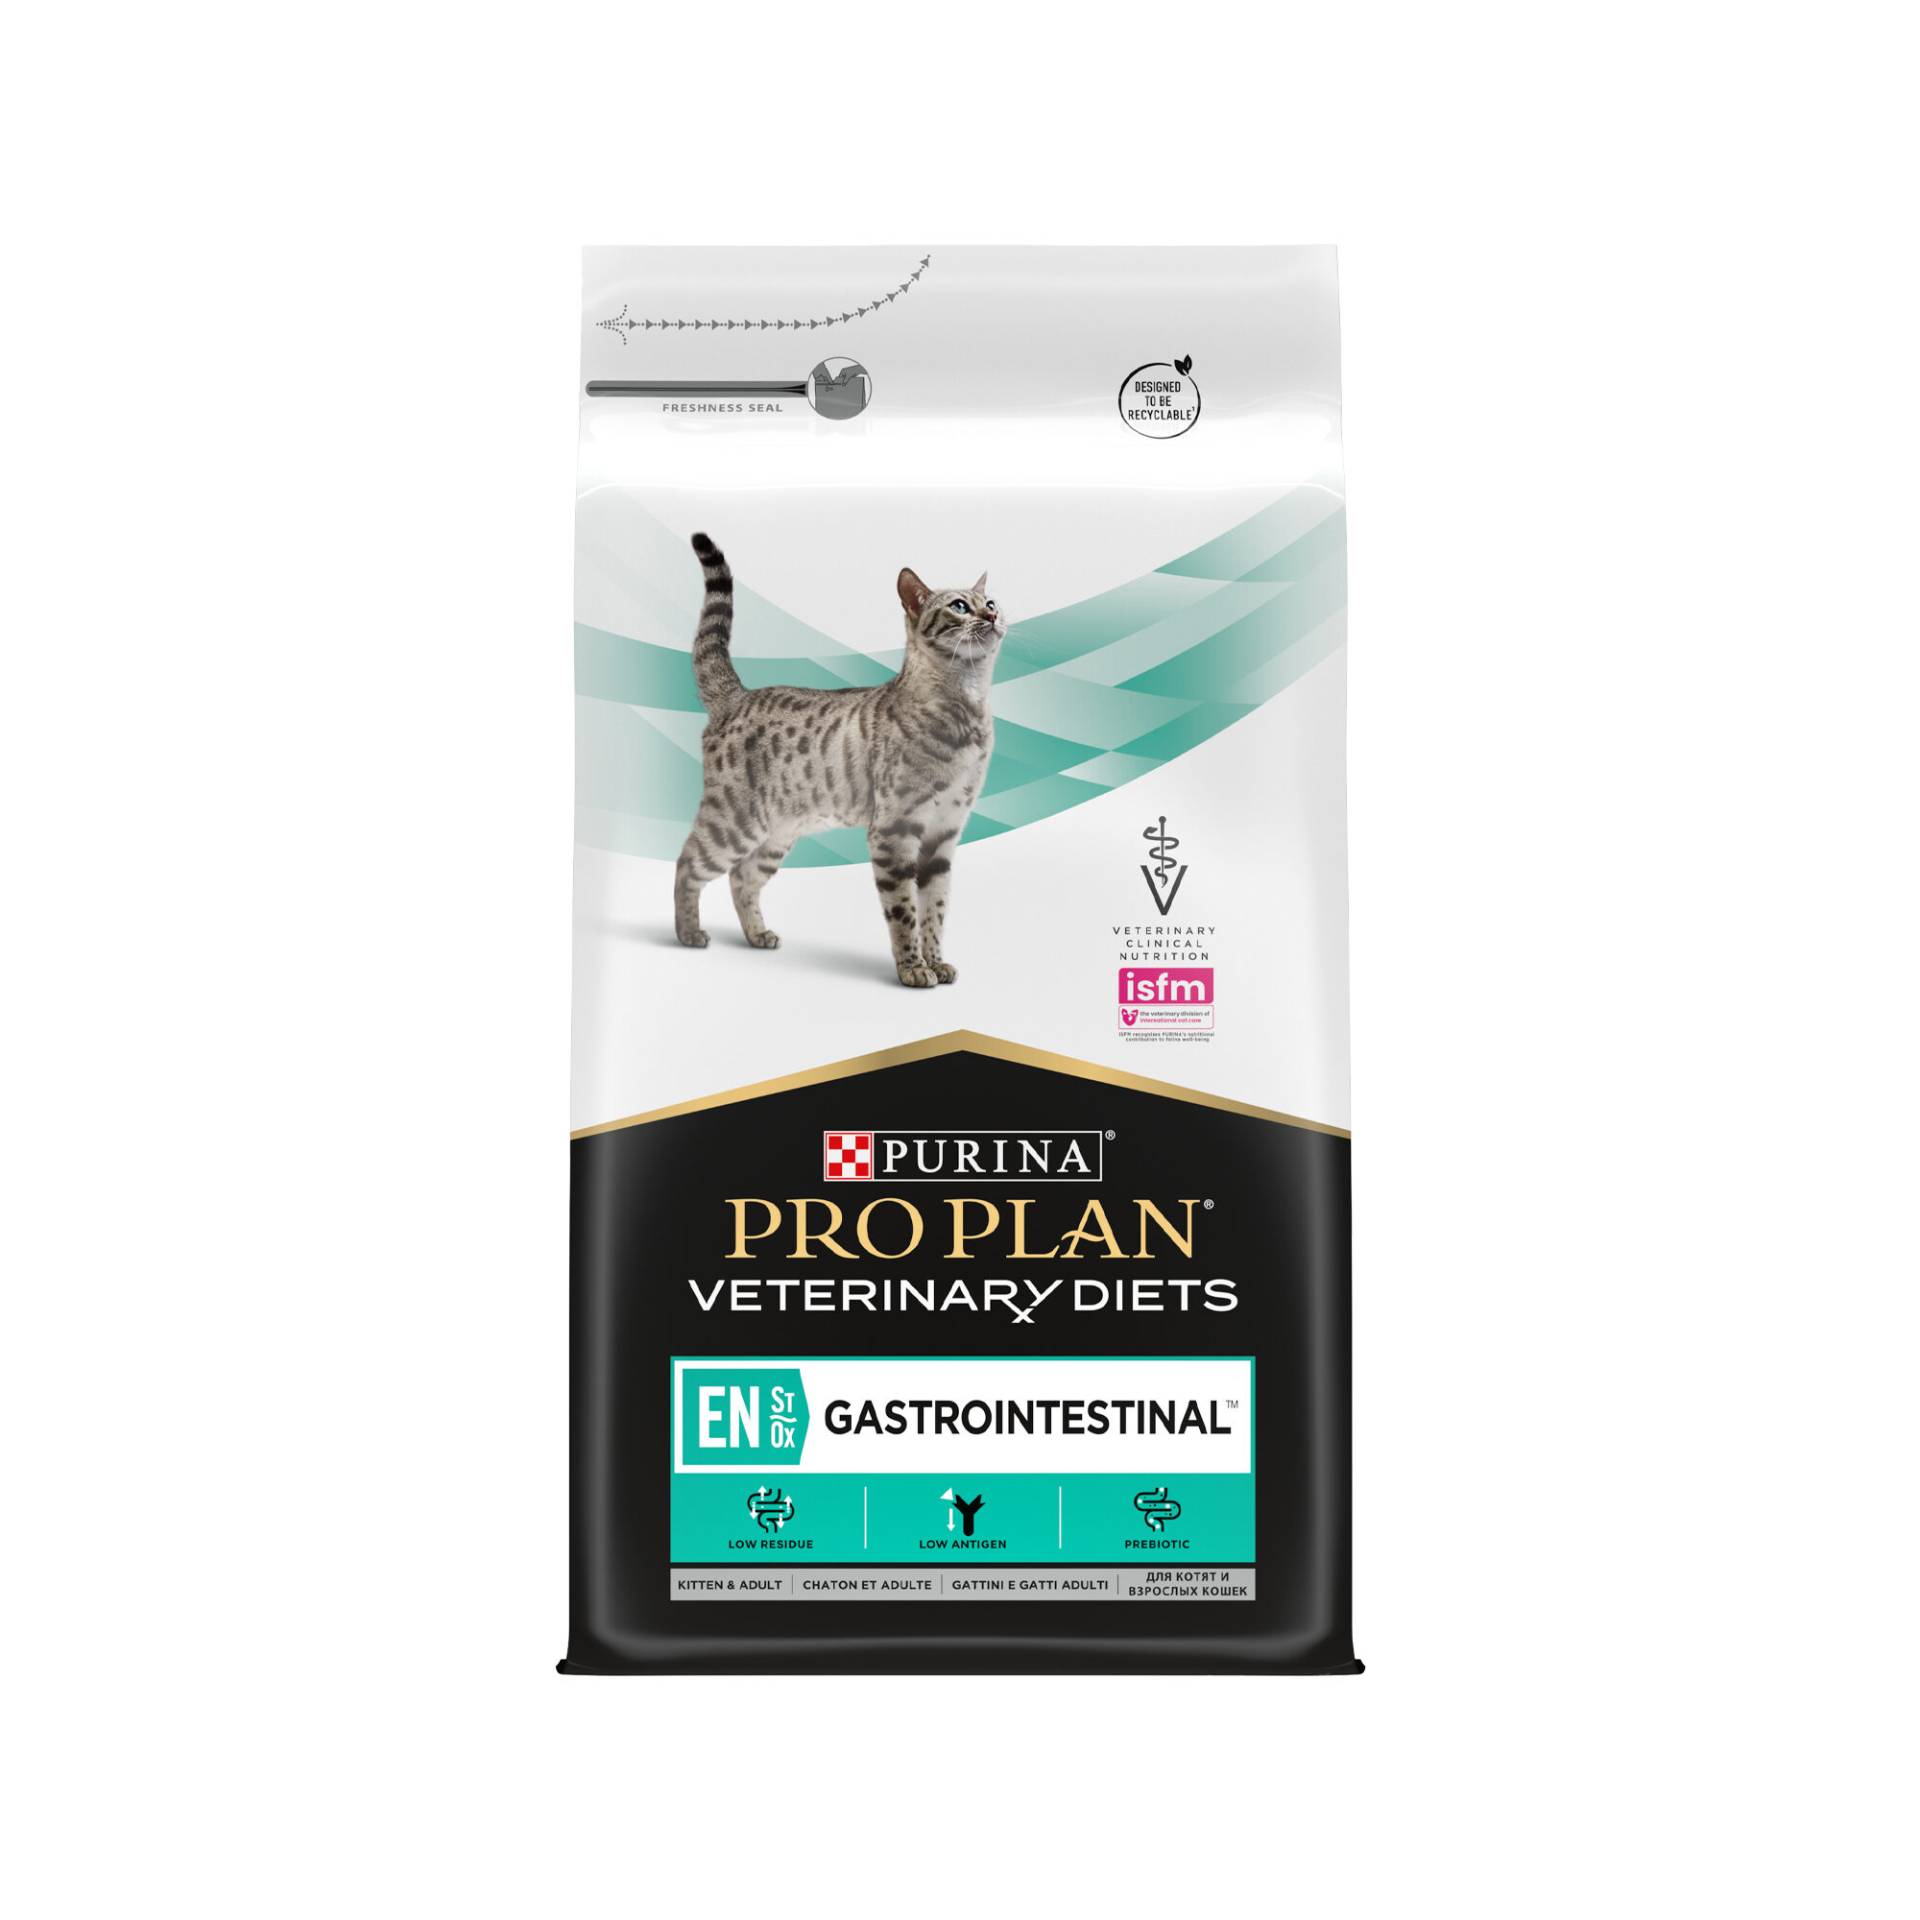 Purina Pro Plan VD EN Gastrointestinal - Katze - 2 x 5 kg von Purina